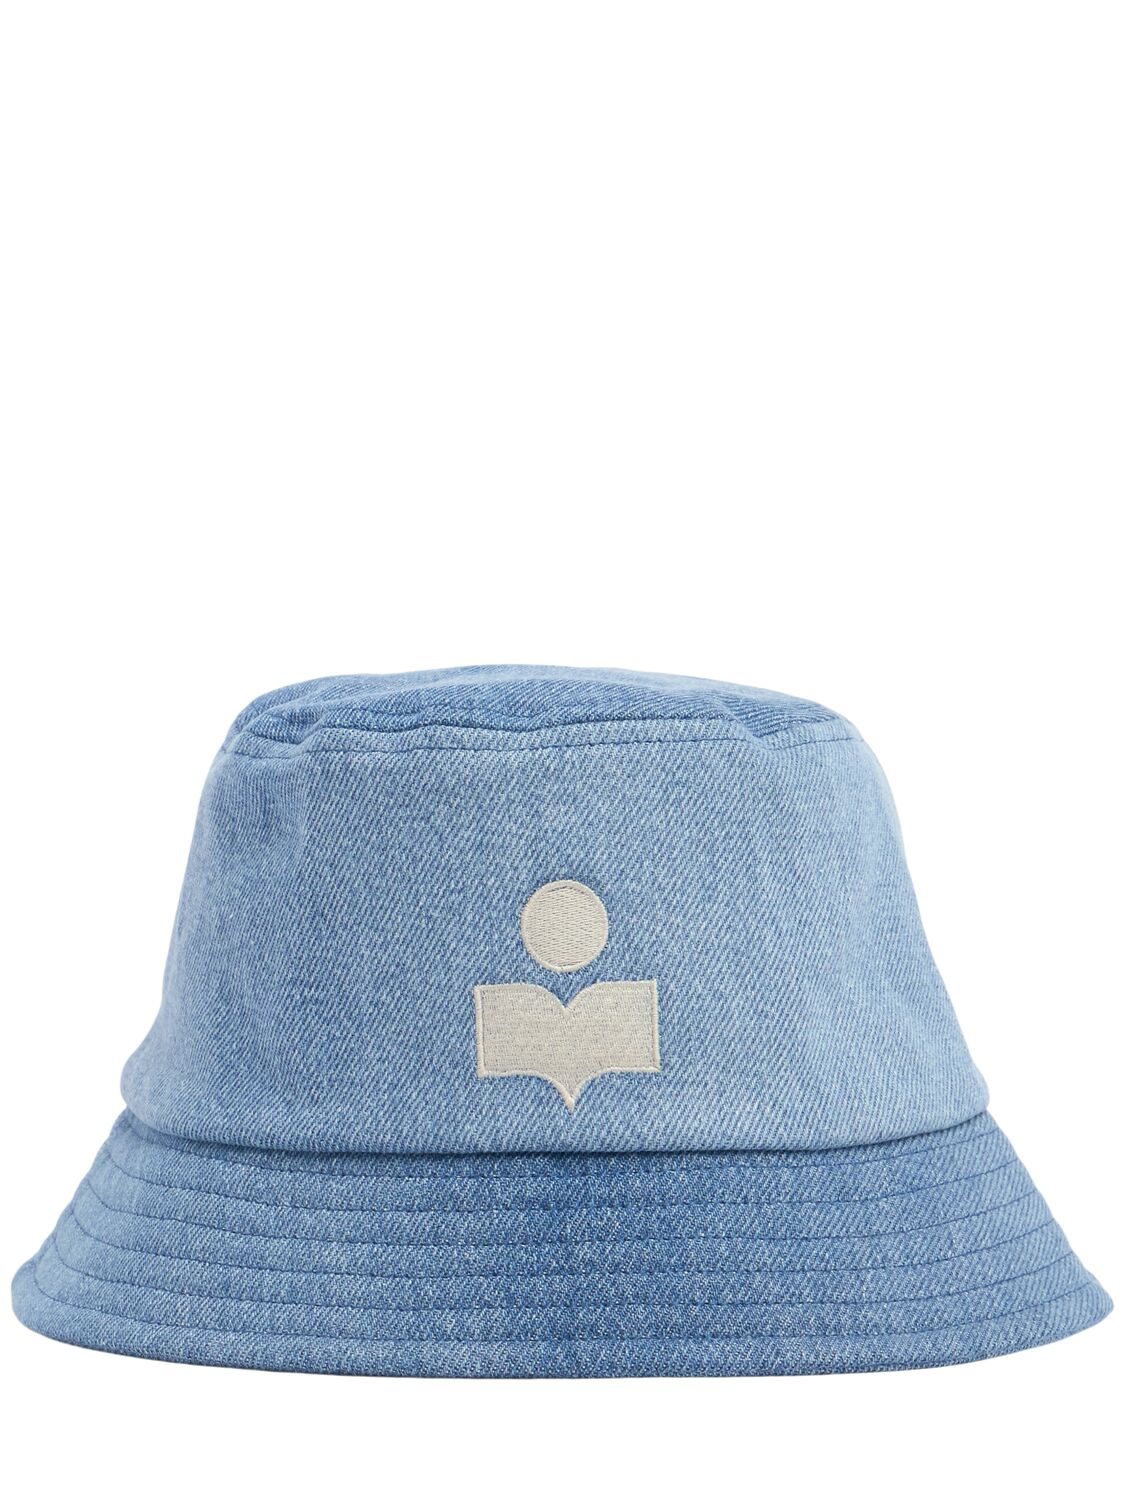 Embroidered Logo Cotton Denim Bucket Hat